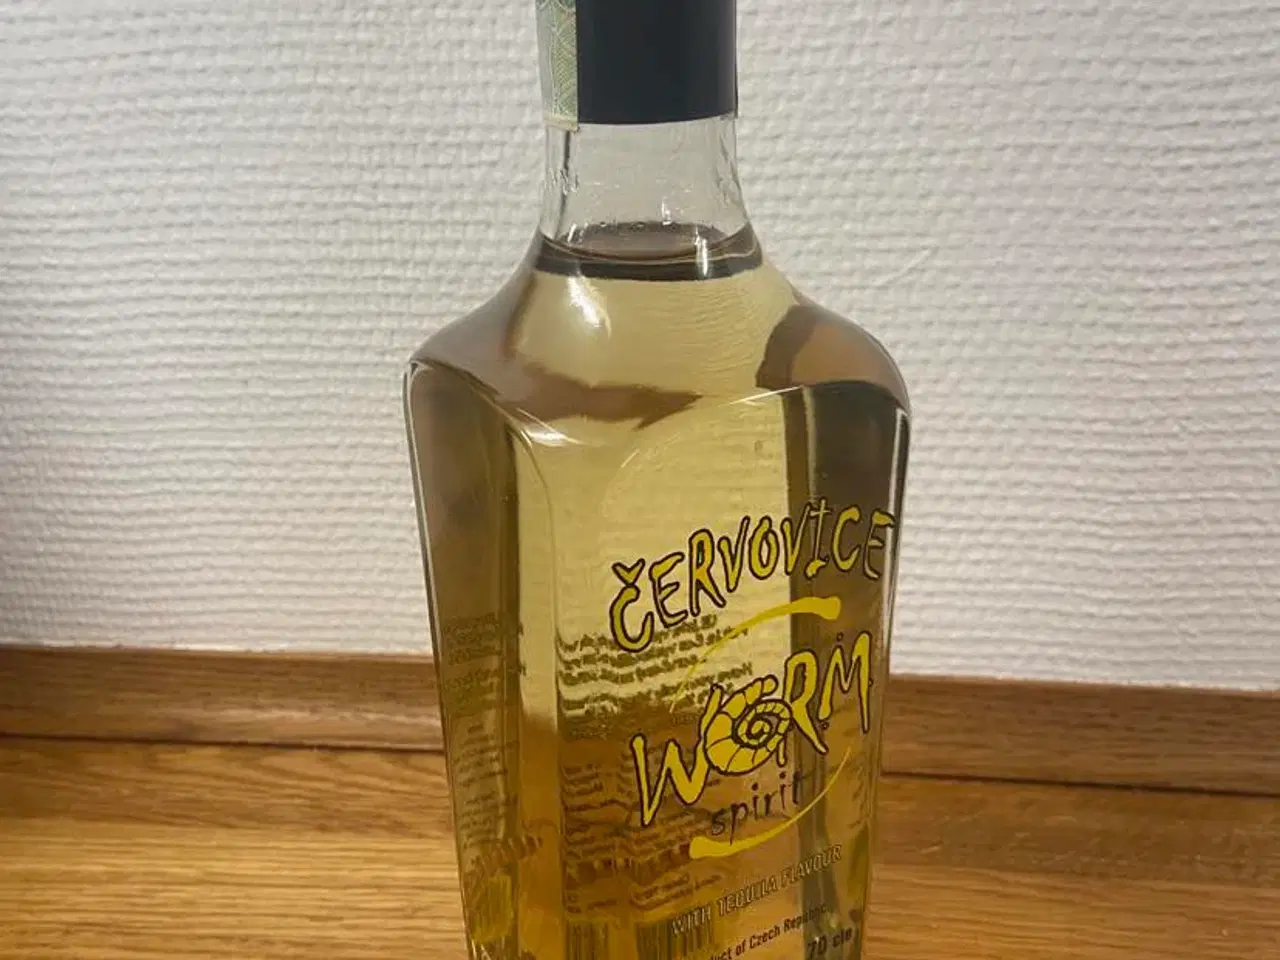 Billede 1 - Cervovice worm spiritus tequila flavor